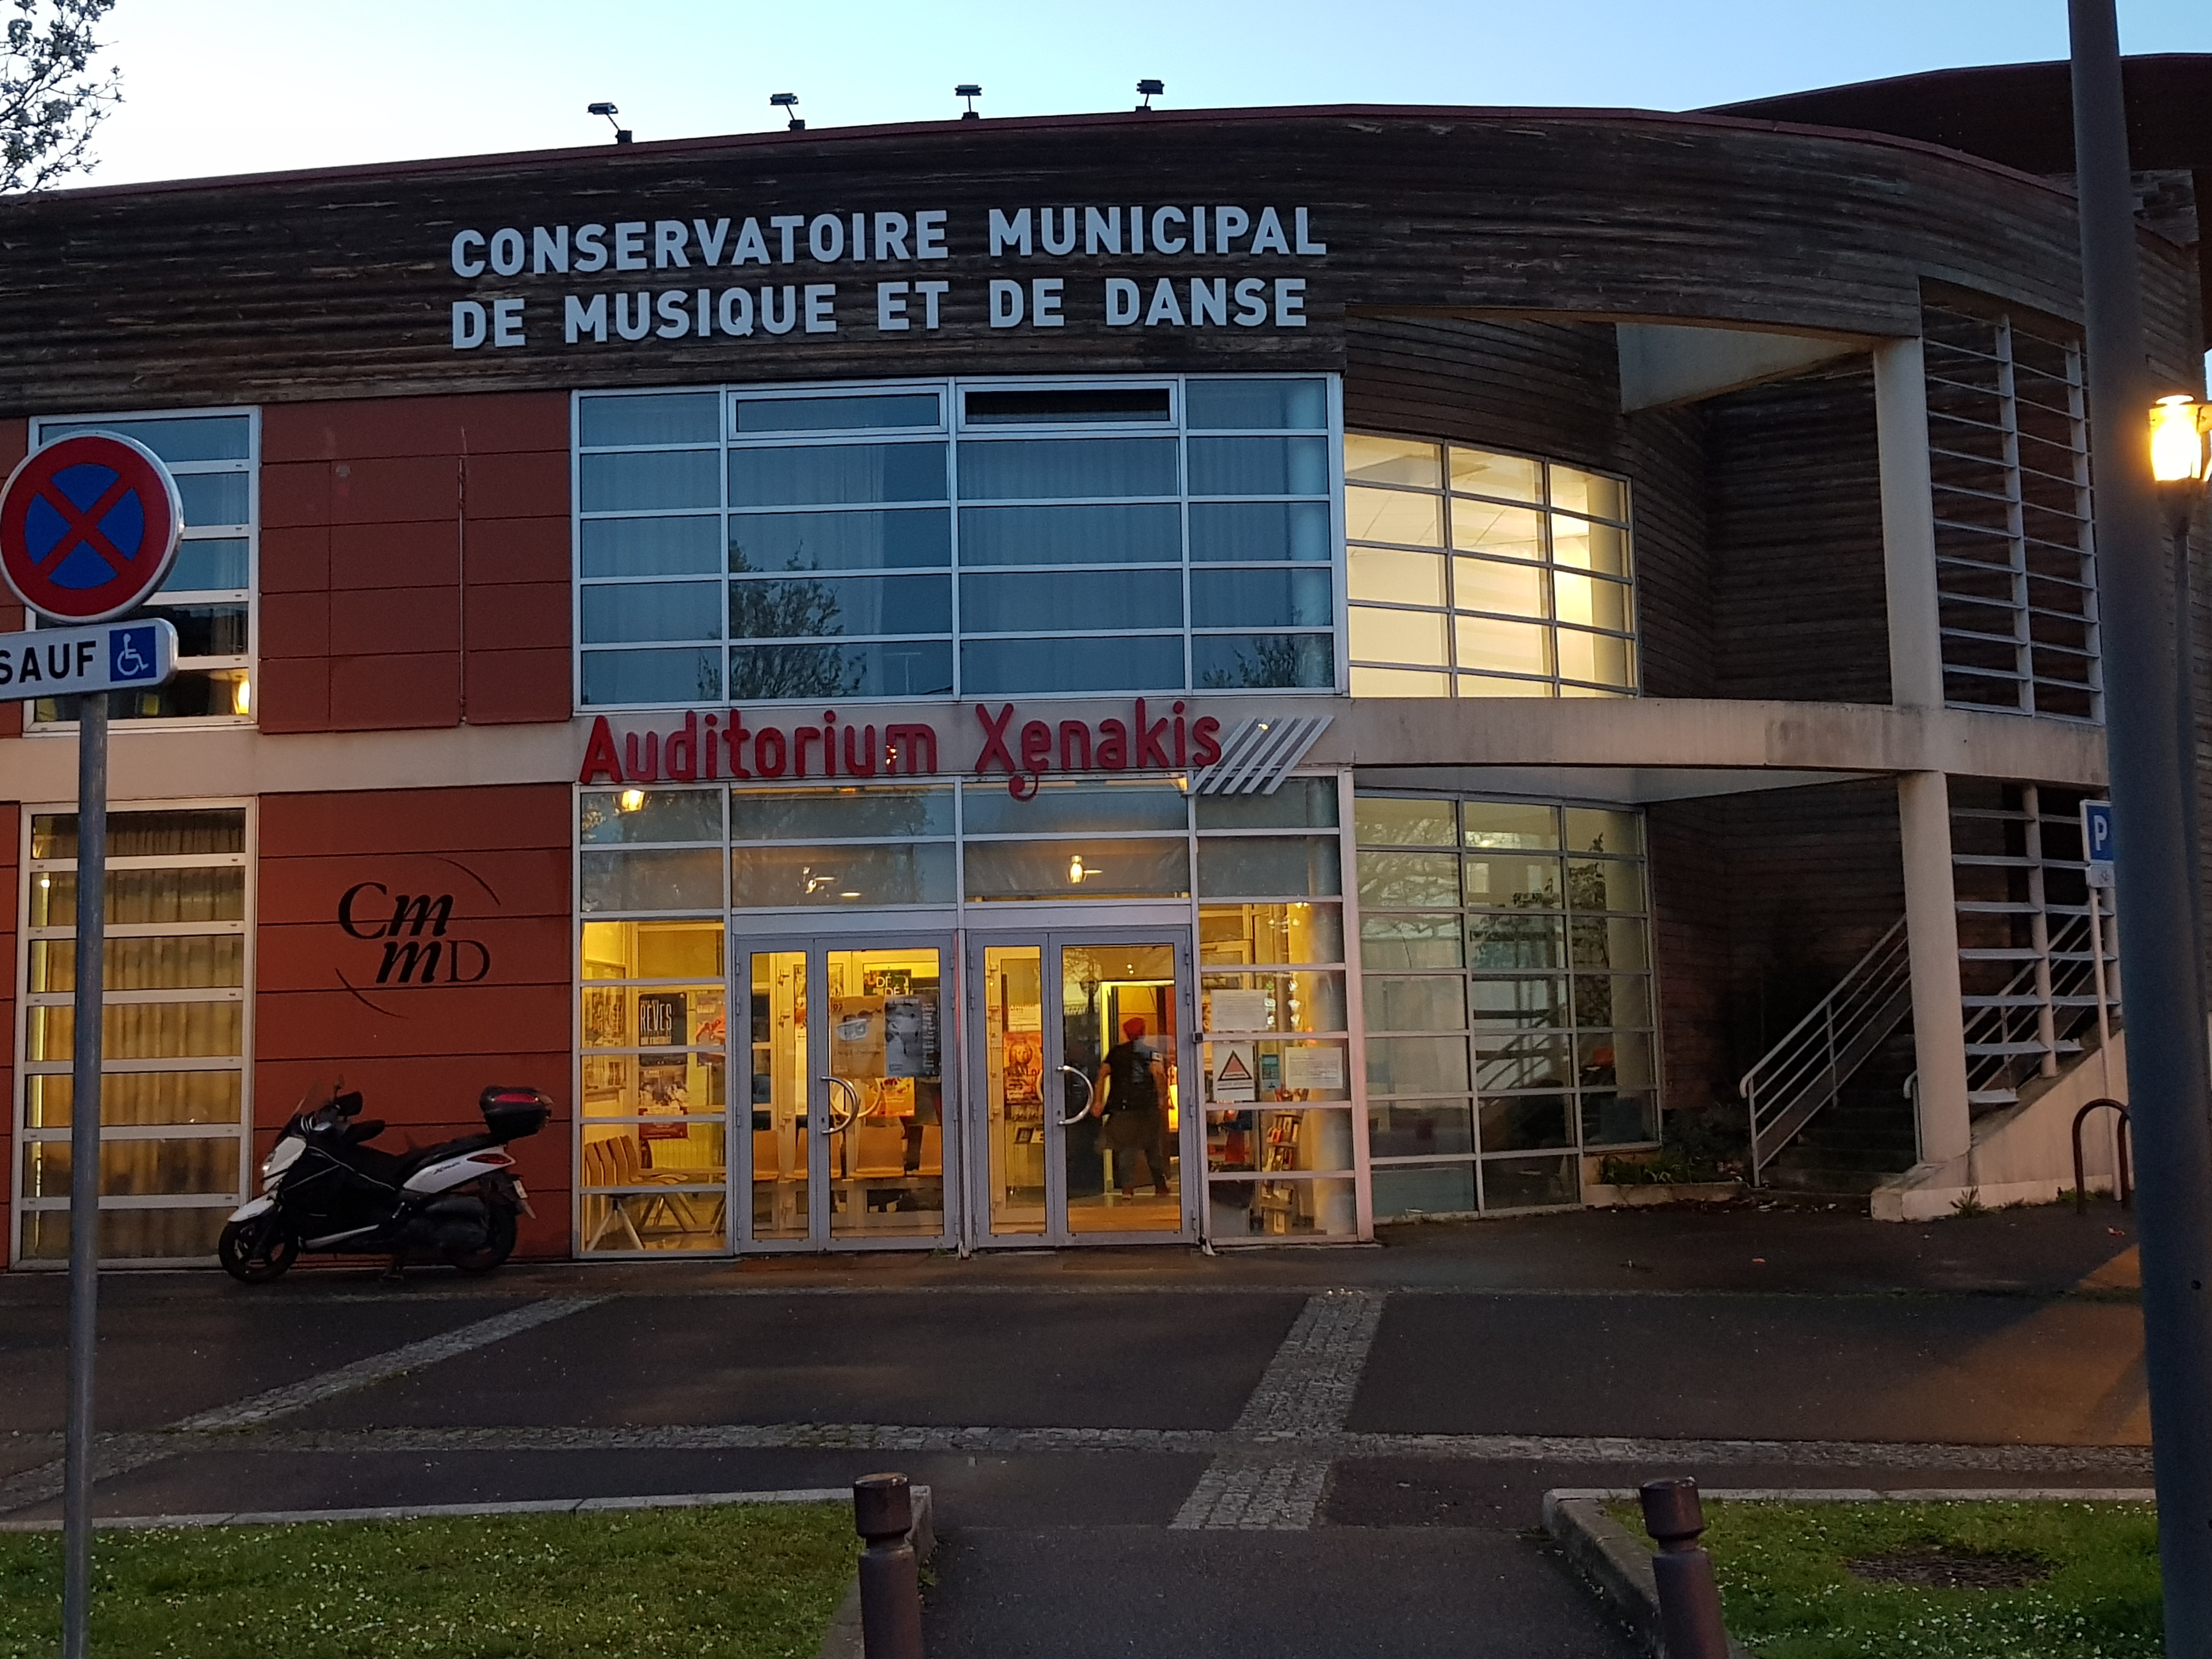 Conservatoire Municipal de Musique et de Danse